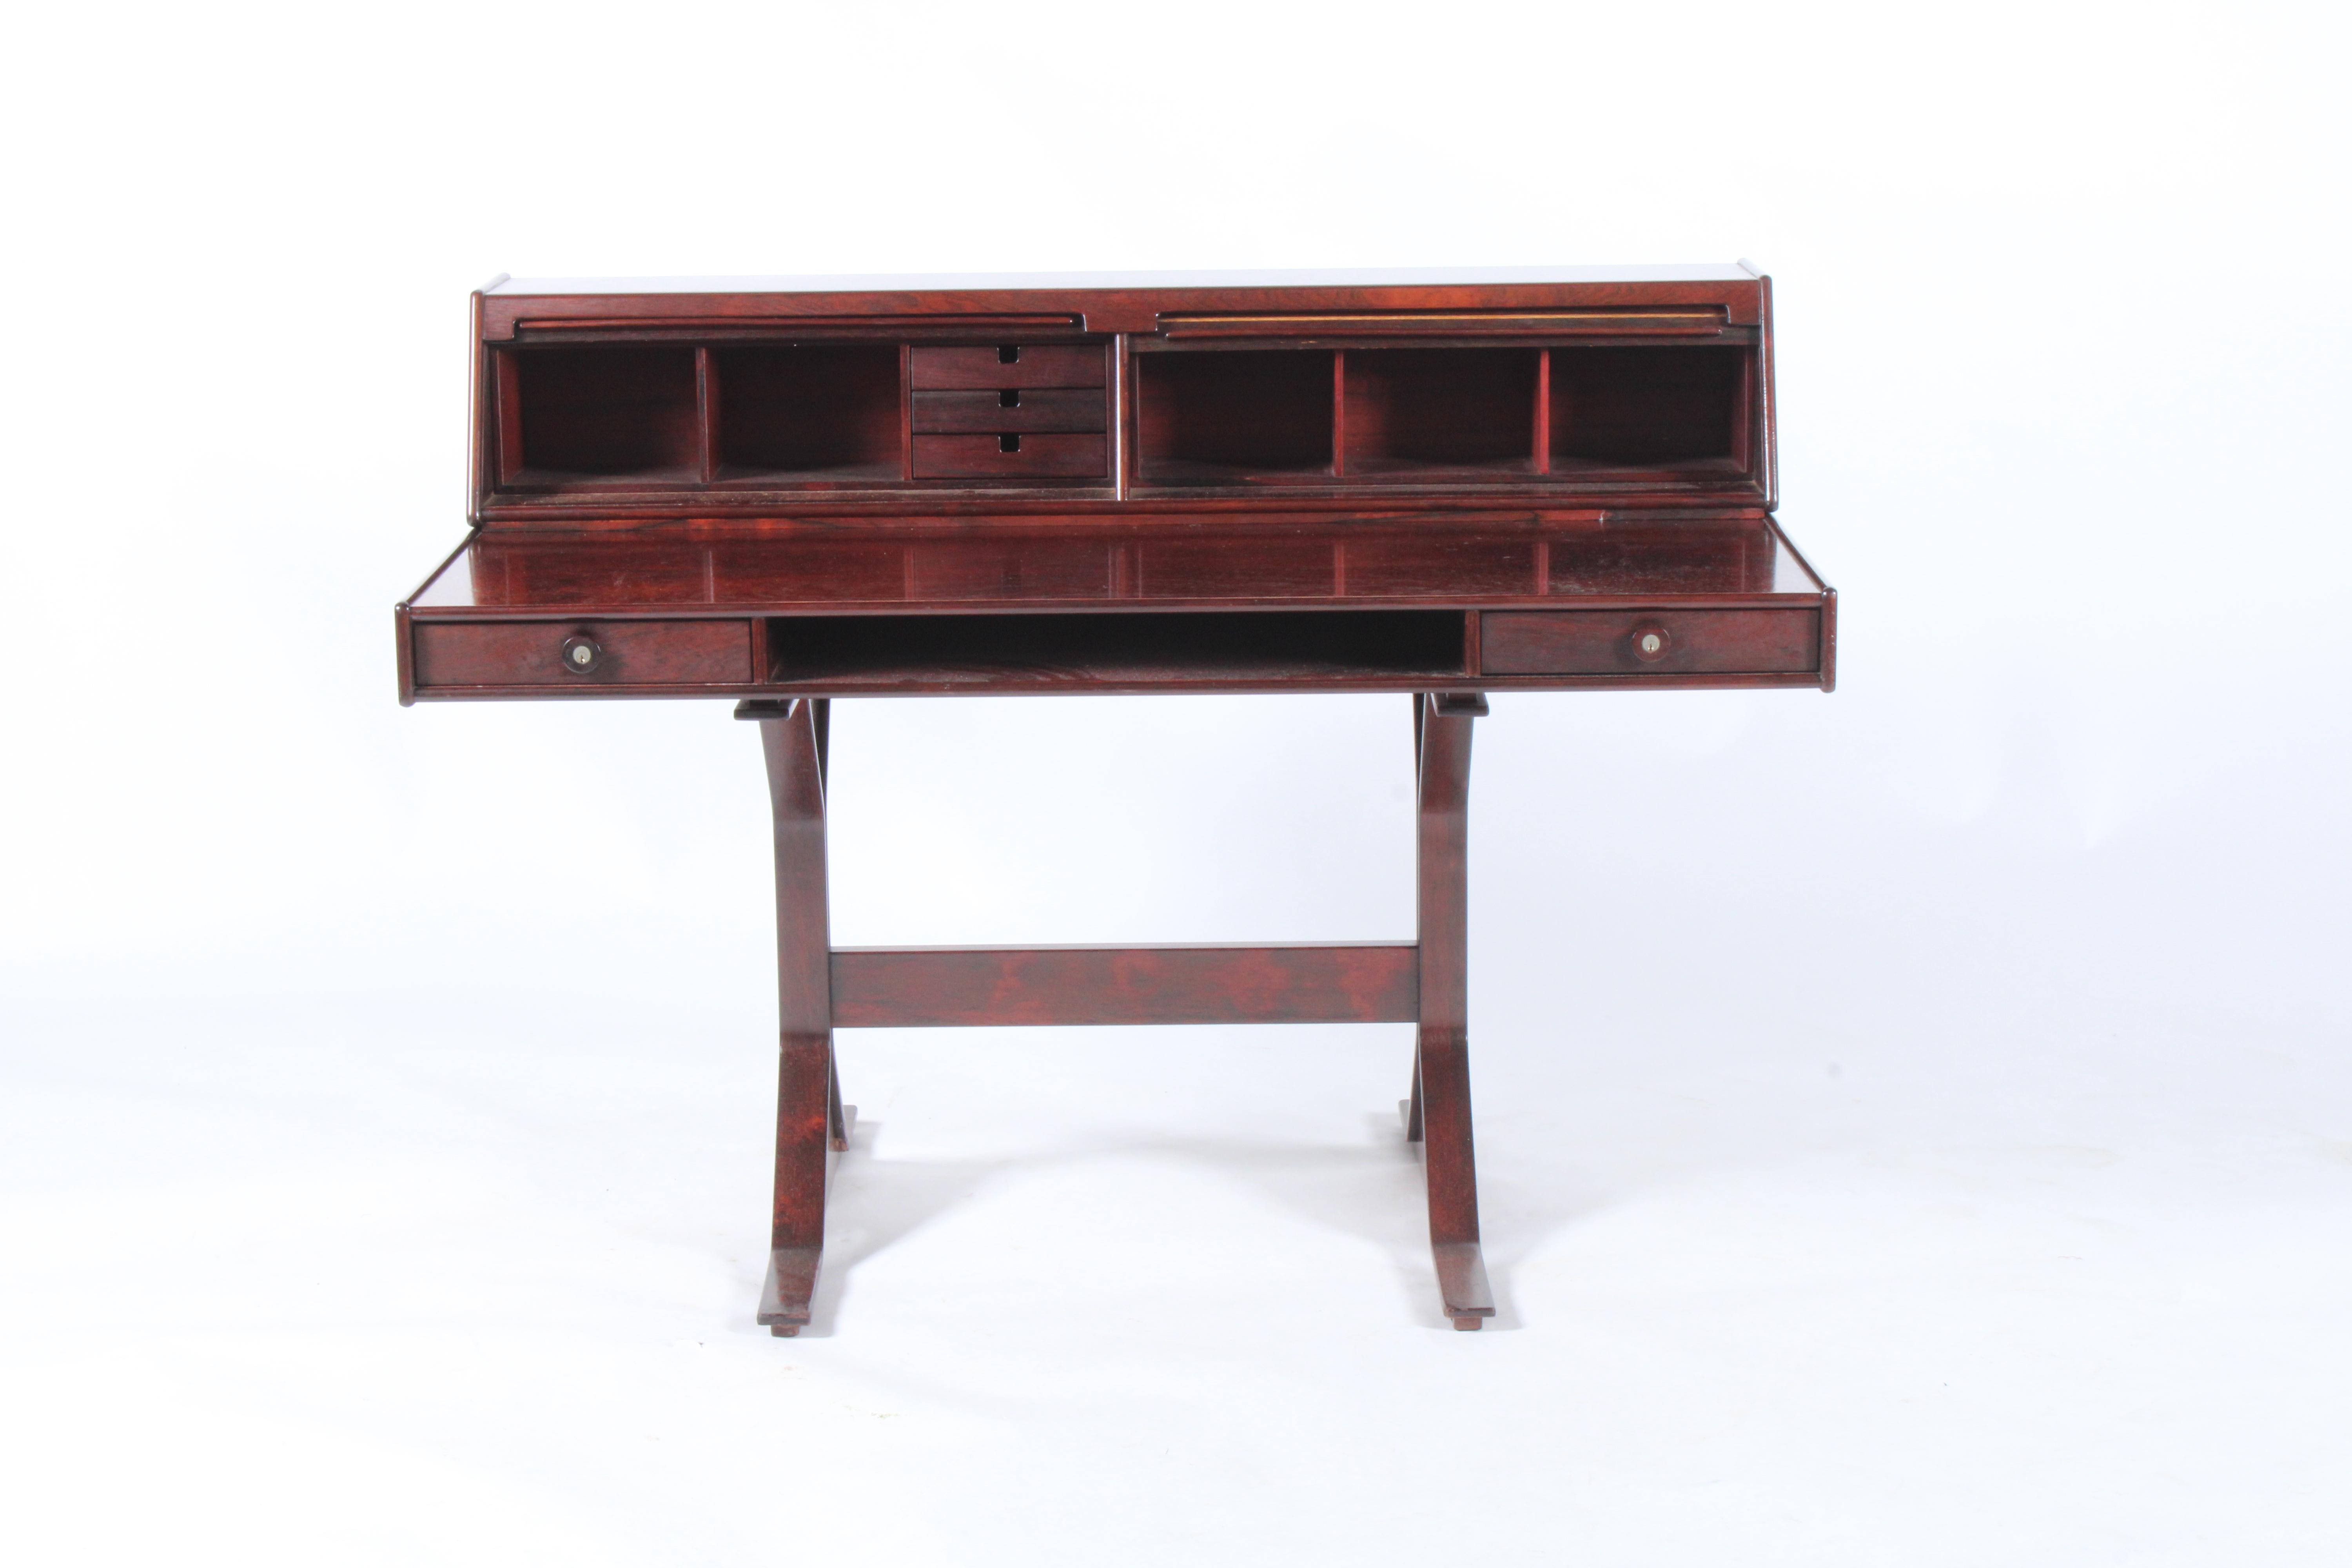 Atemberaubendes Design und echte Qualität machen diesen Schreibtisch zu einem der herausragenden Stücke in unserer Collection'S, die zum Verkauf stehen. Der 1957 von dem italienischen Designer Gianfranco Frattini entworfene Schreibtisch ist eine